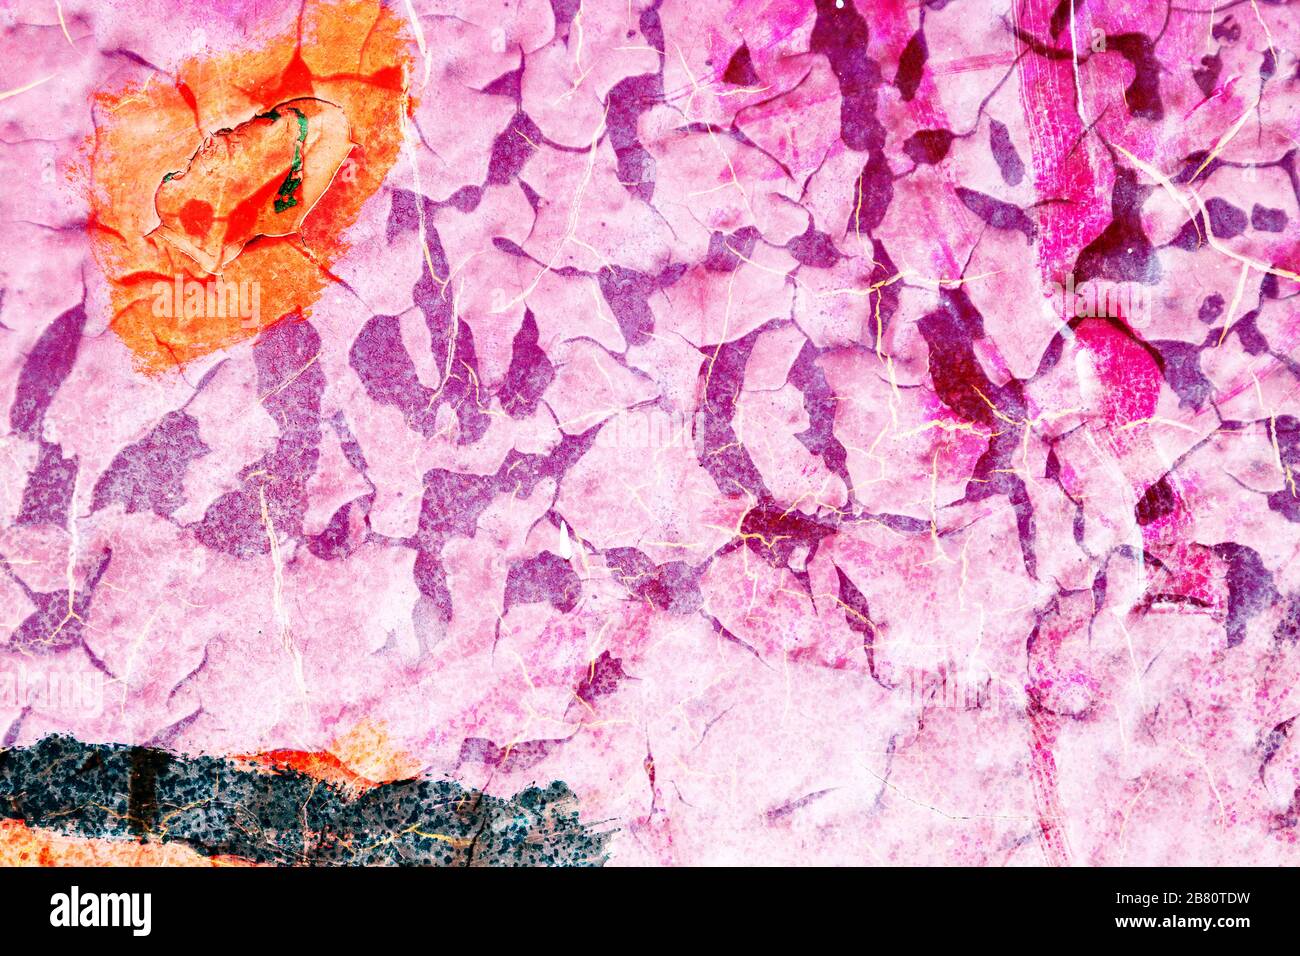 Bunte Oberflächenbeschaffenheit mit roter und pinkfarbener Farbe auf einer metallischen Oberflächenstruktur mit Rissen und Kratzern. Für abstrakte Hintergründe. Deutschland Stockfoto